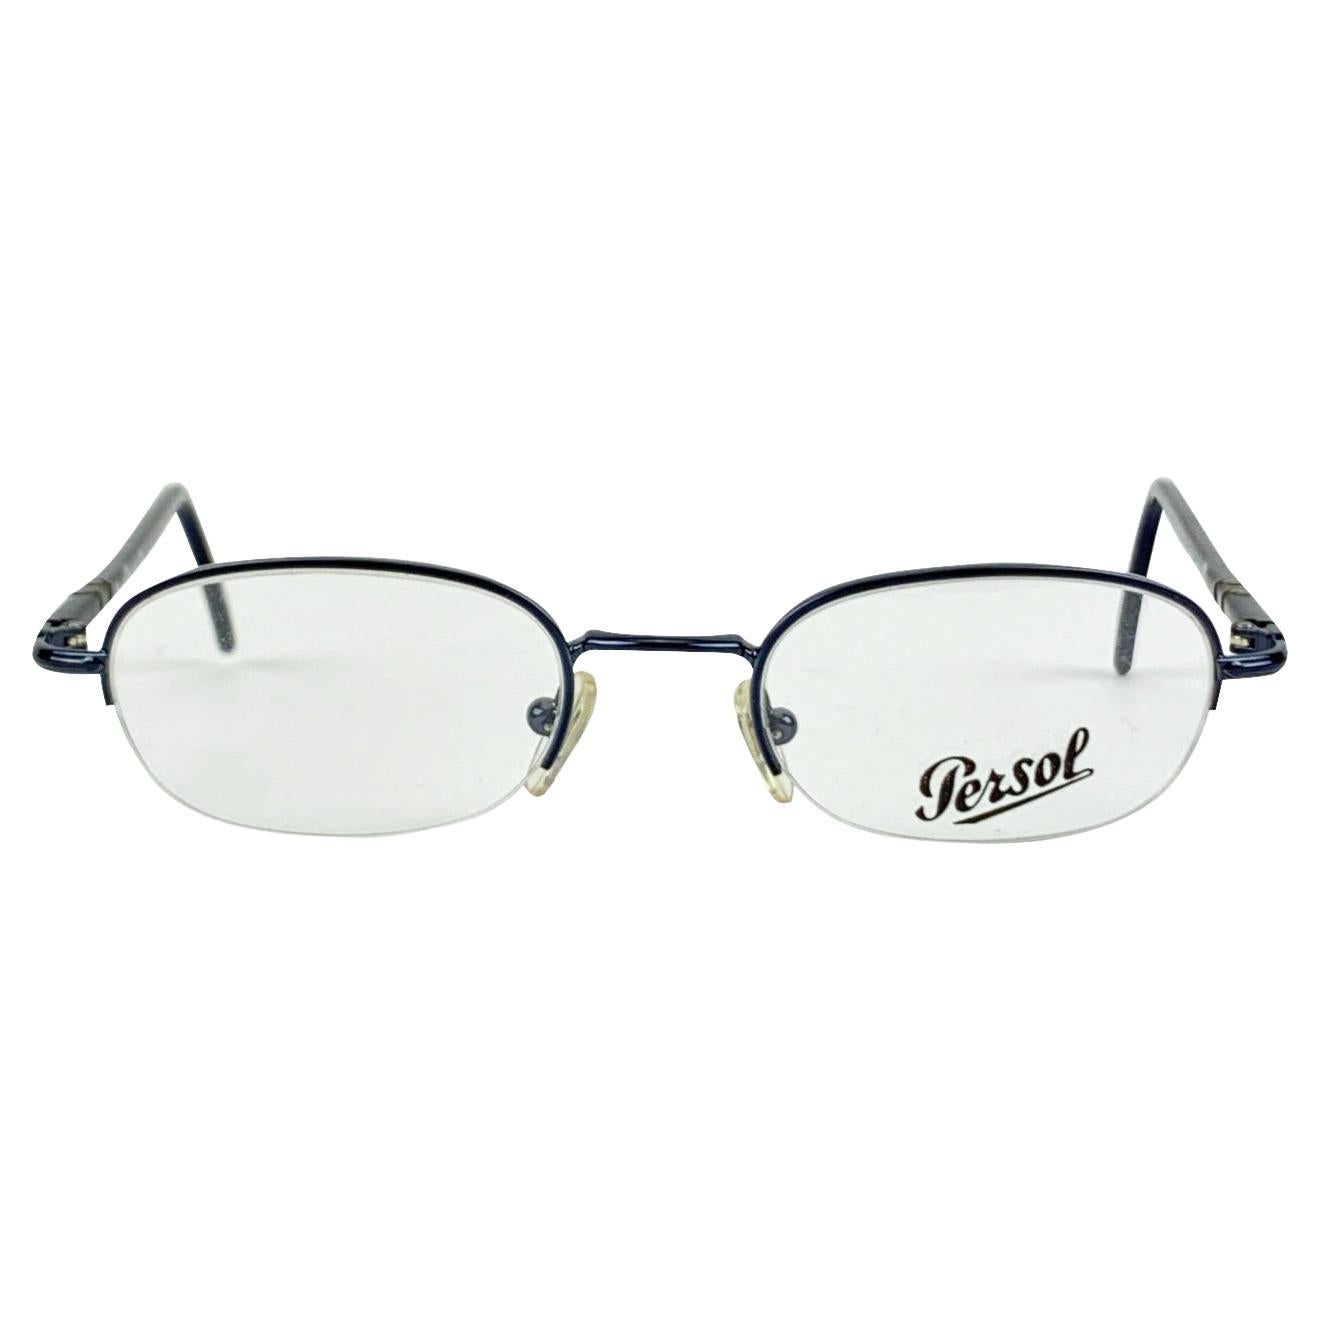 Persol Vintage Mint Eyeglasses 2065V Blue Half Rim 48/20 130 mm